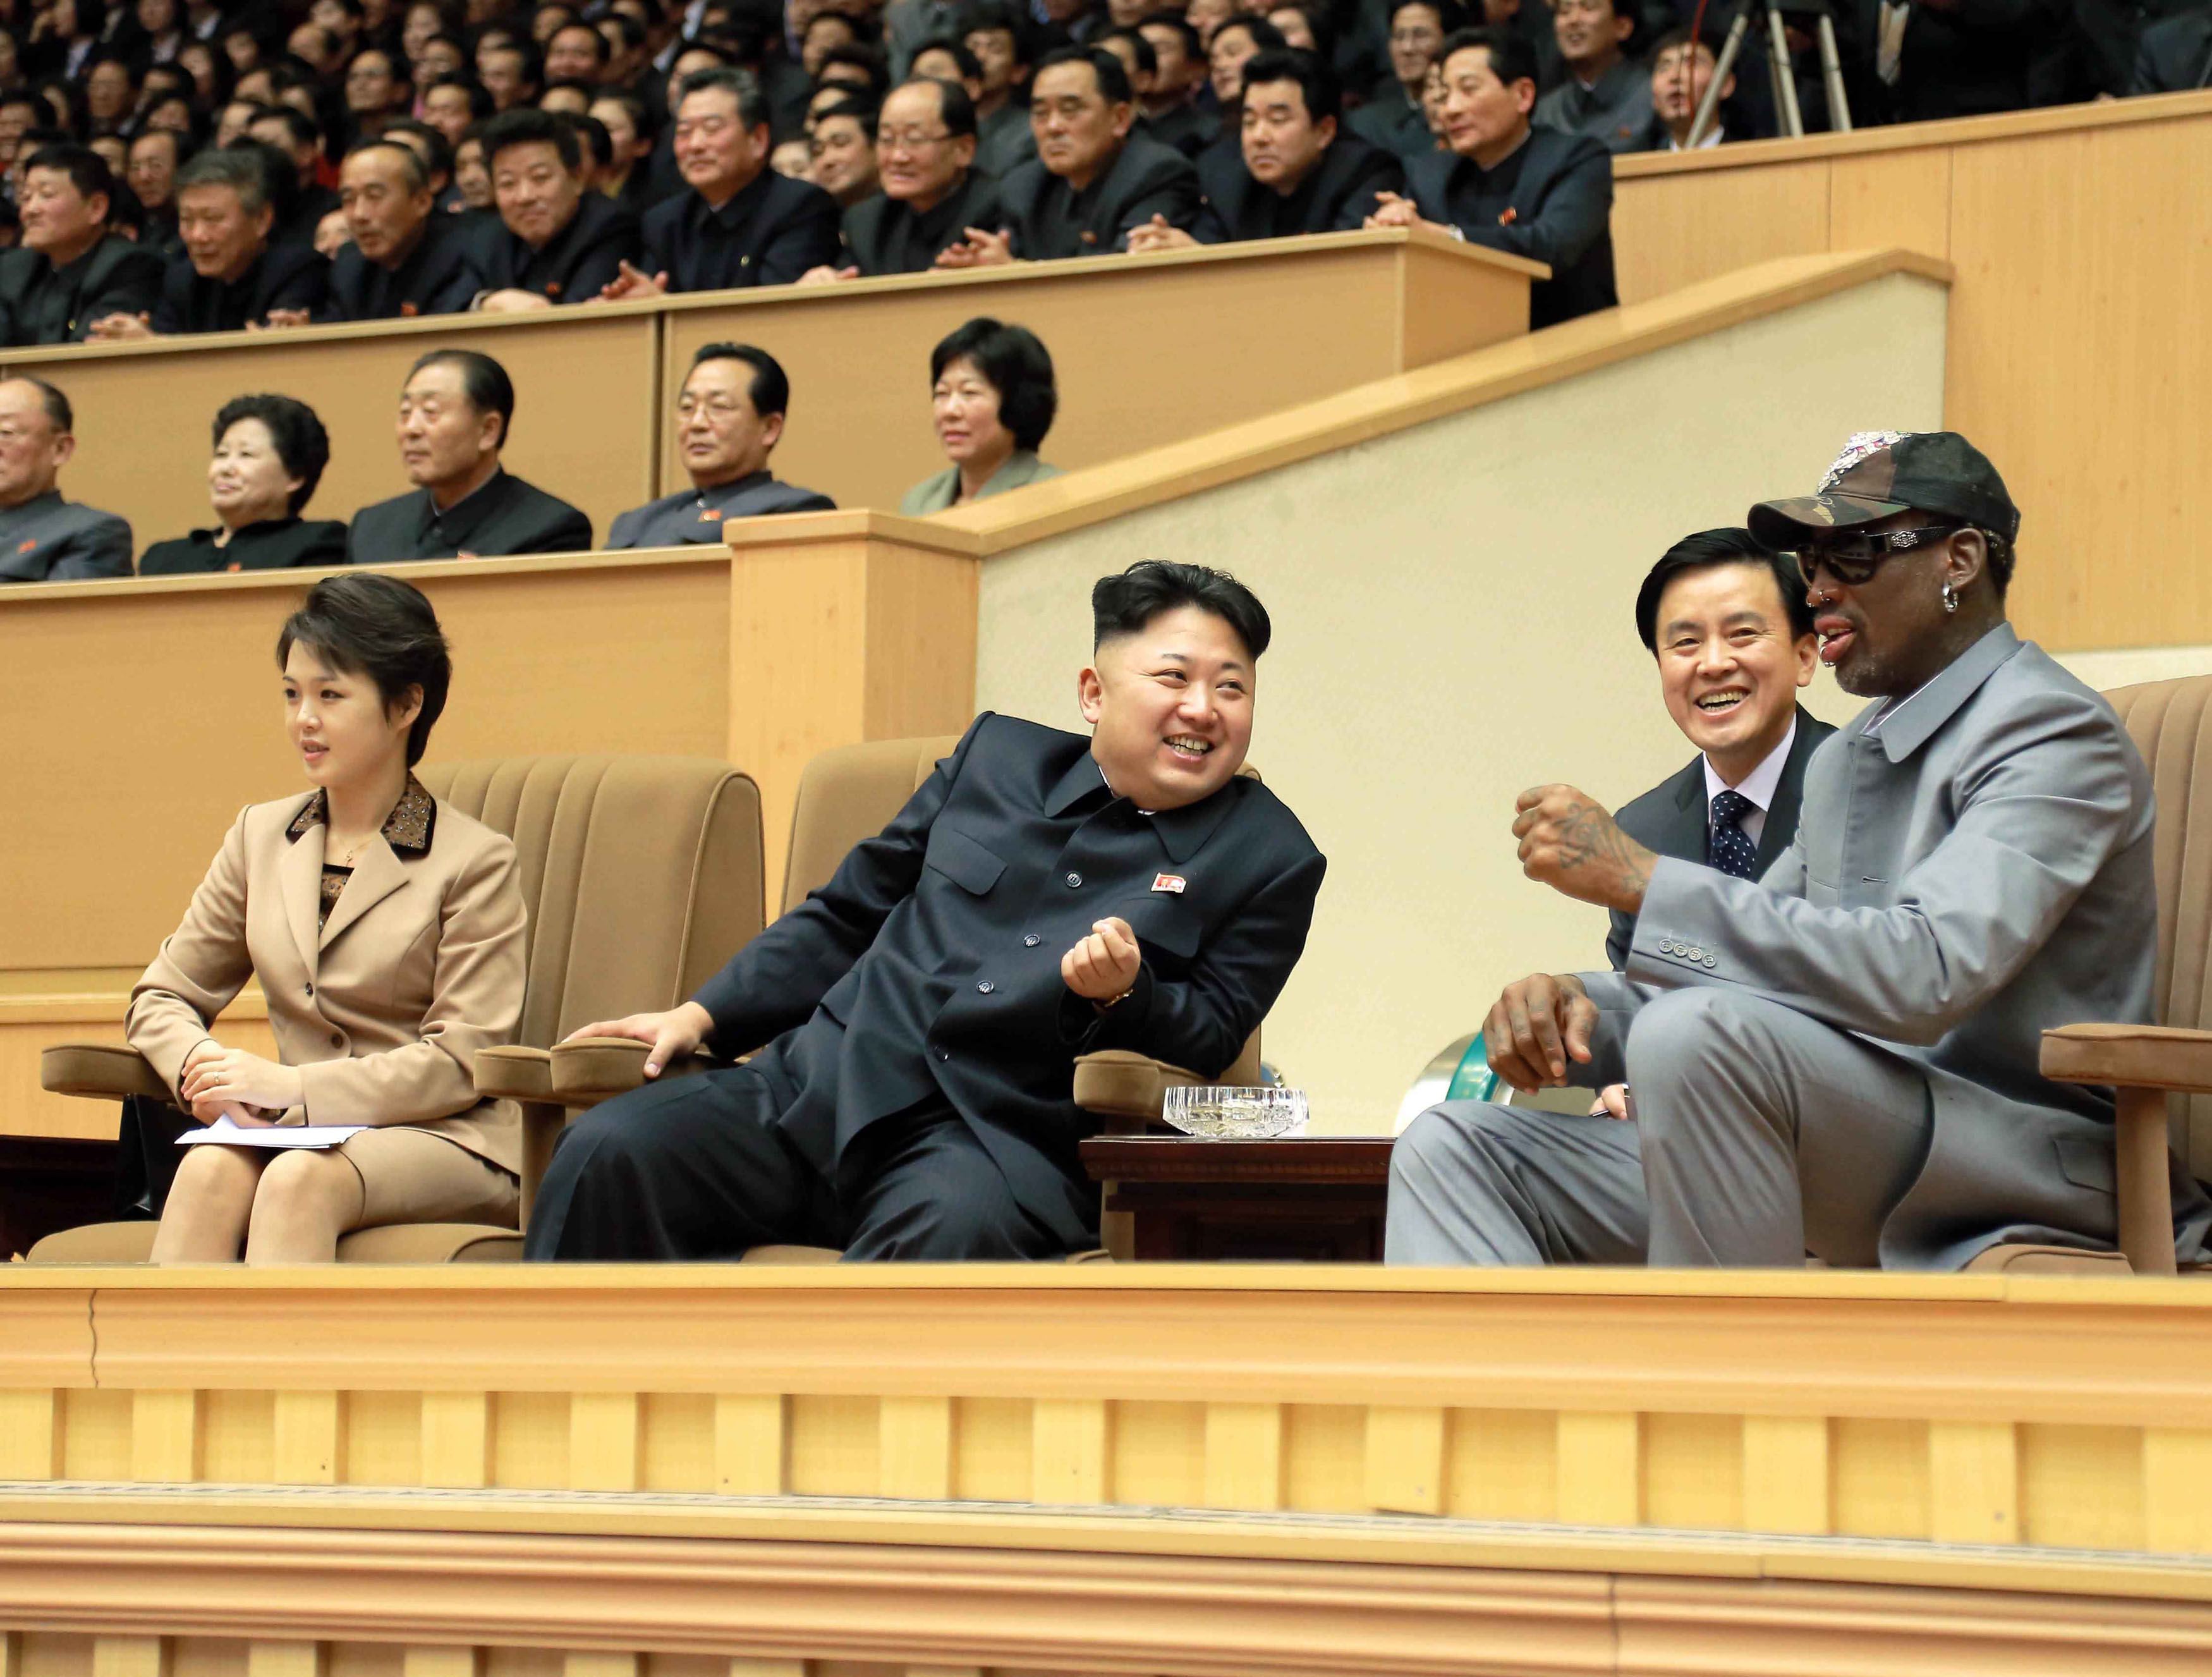 O Nτένις Ρόντμαν στη Β.Κορέα για να δει τον φίλο του Κιμ Γιονγκ Ουν